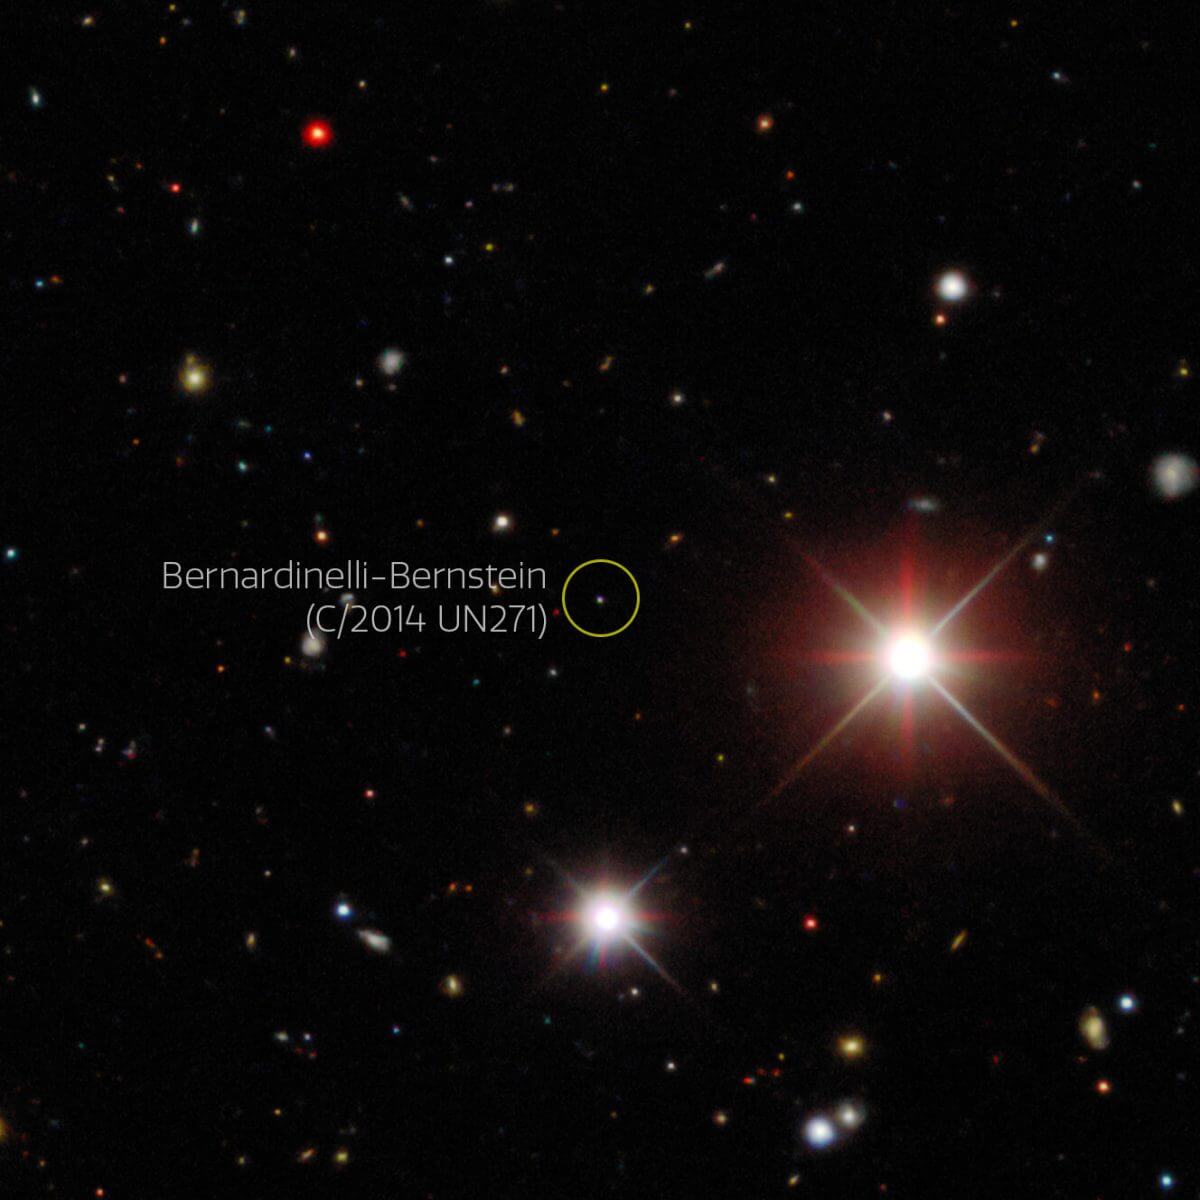 ダークエネルギーカメラが撮影したバーナーディネリ・バーンスティン彗星